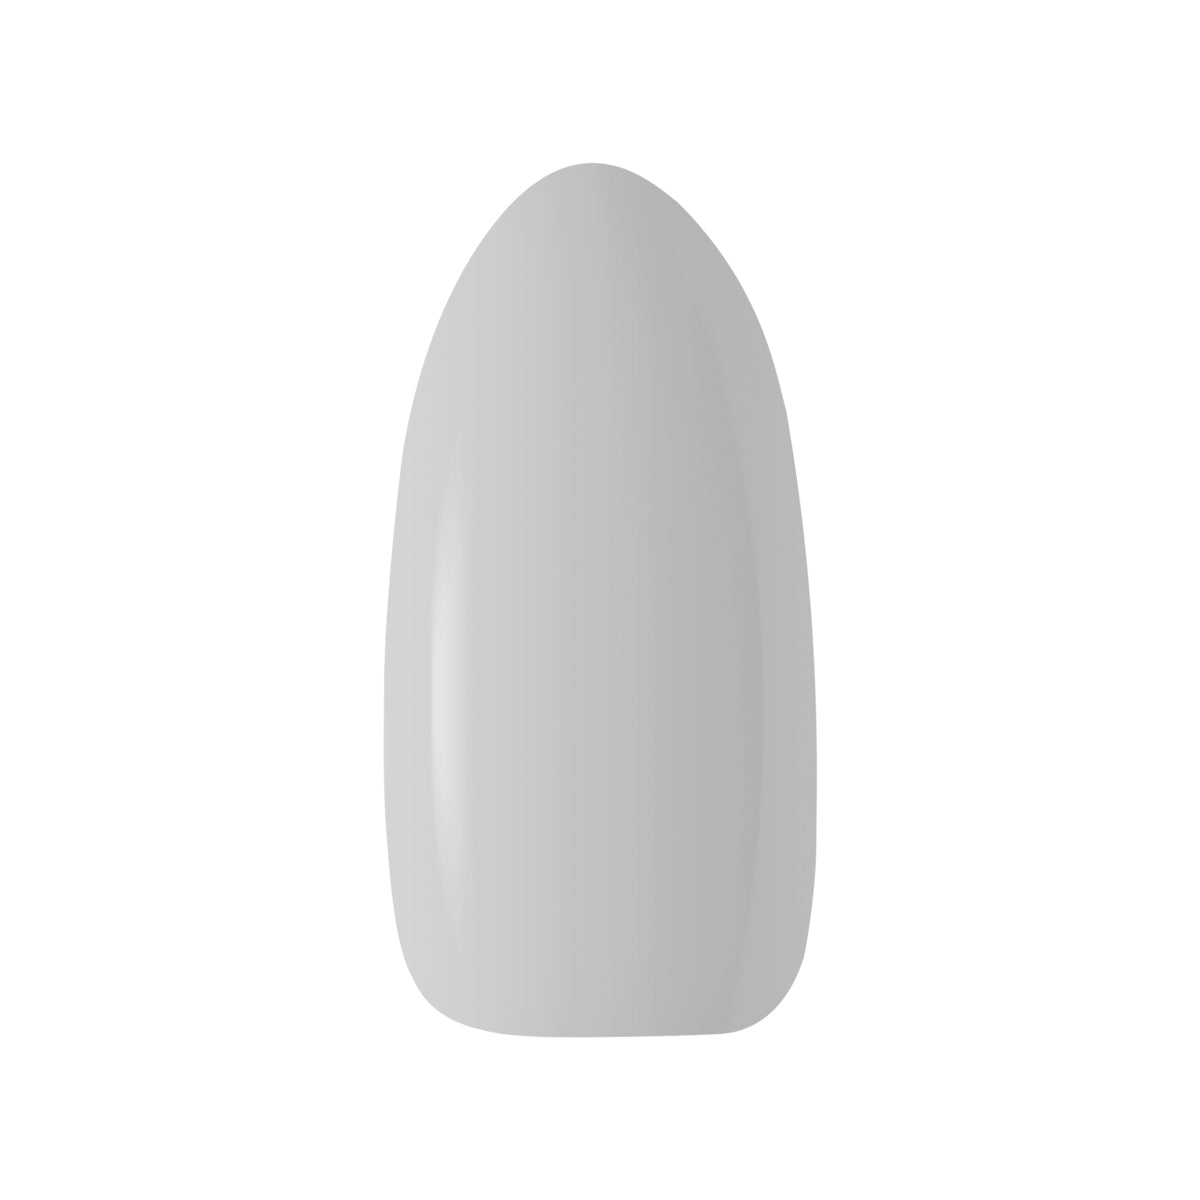 OCHO NAILS Hybrid nail polish gray 602 -5 g